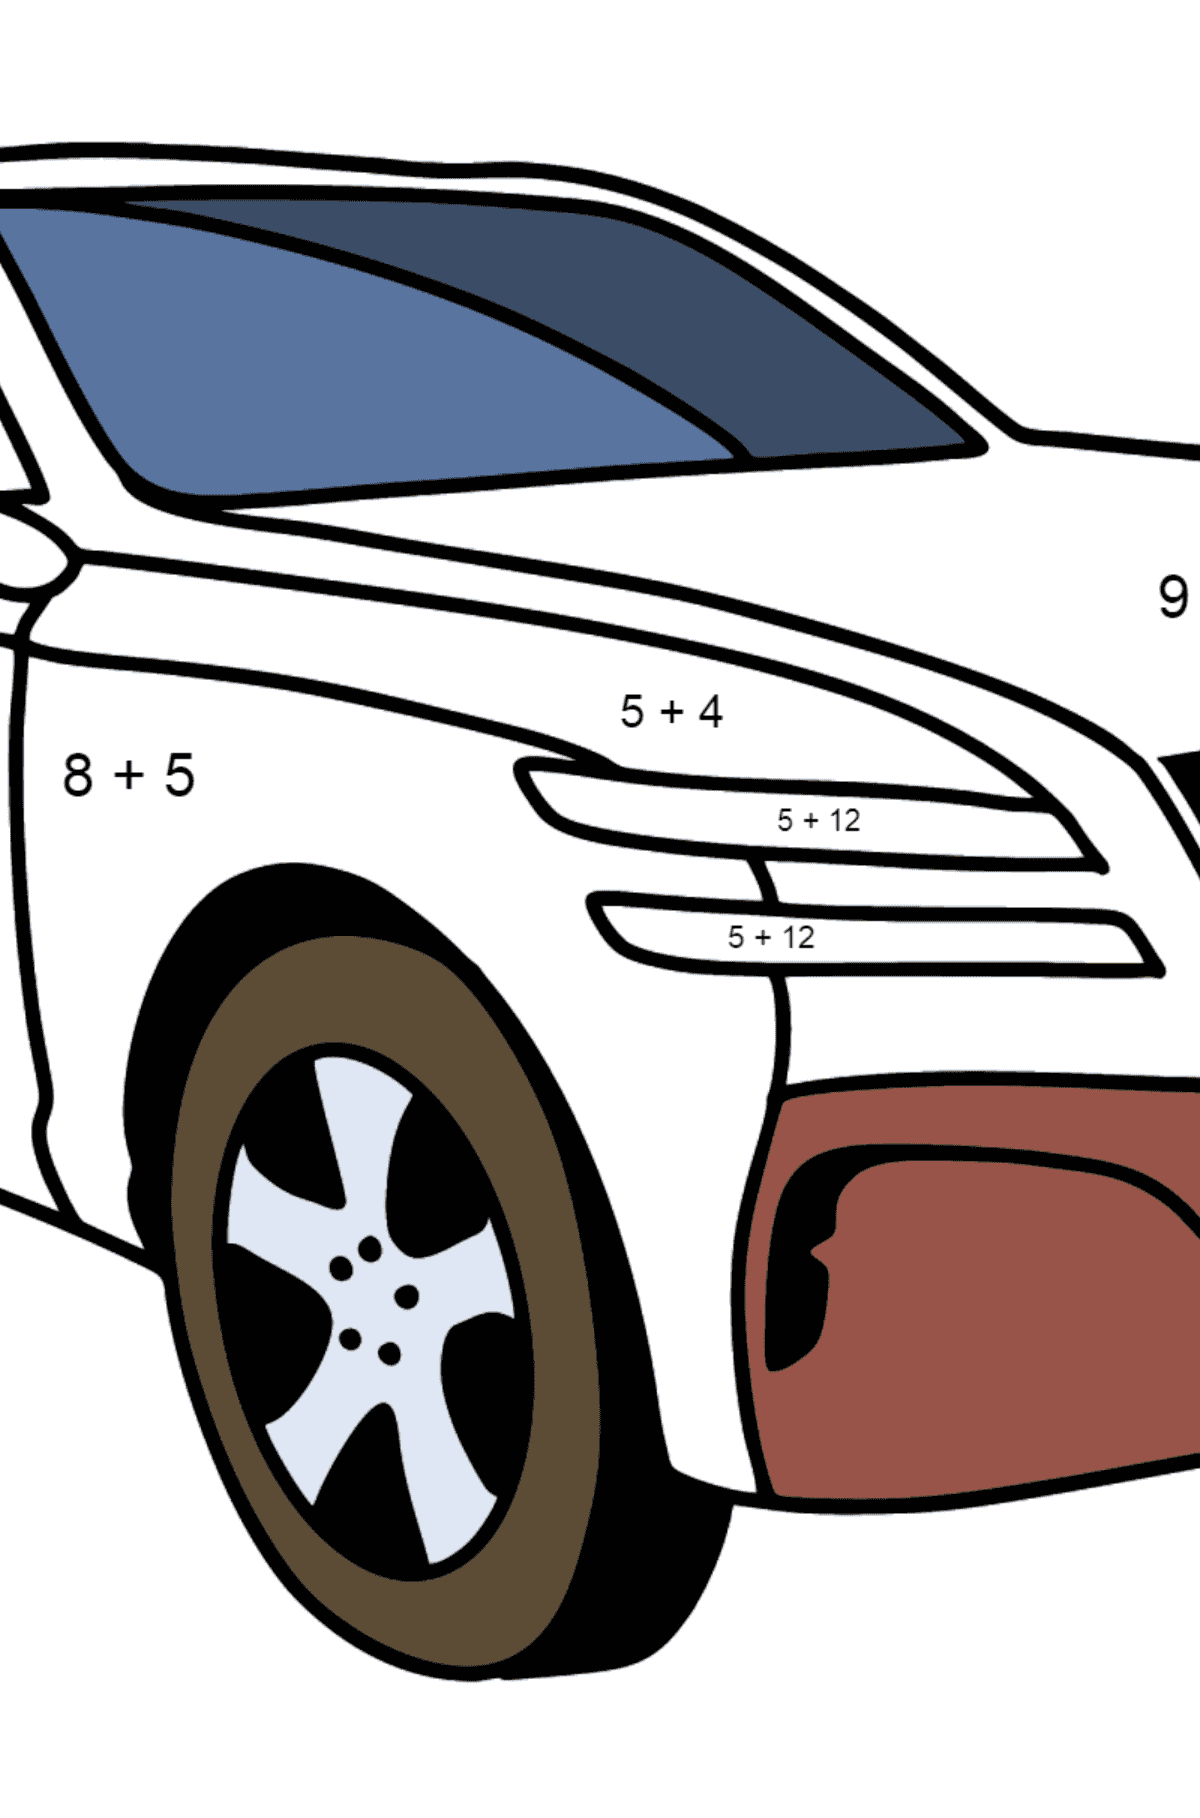 Genesis Auto Ausmalbild - Mathe Ausmalbilder - Addition für Kinder